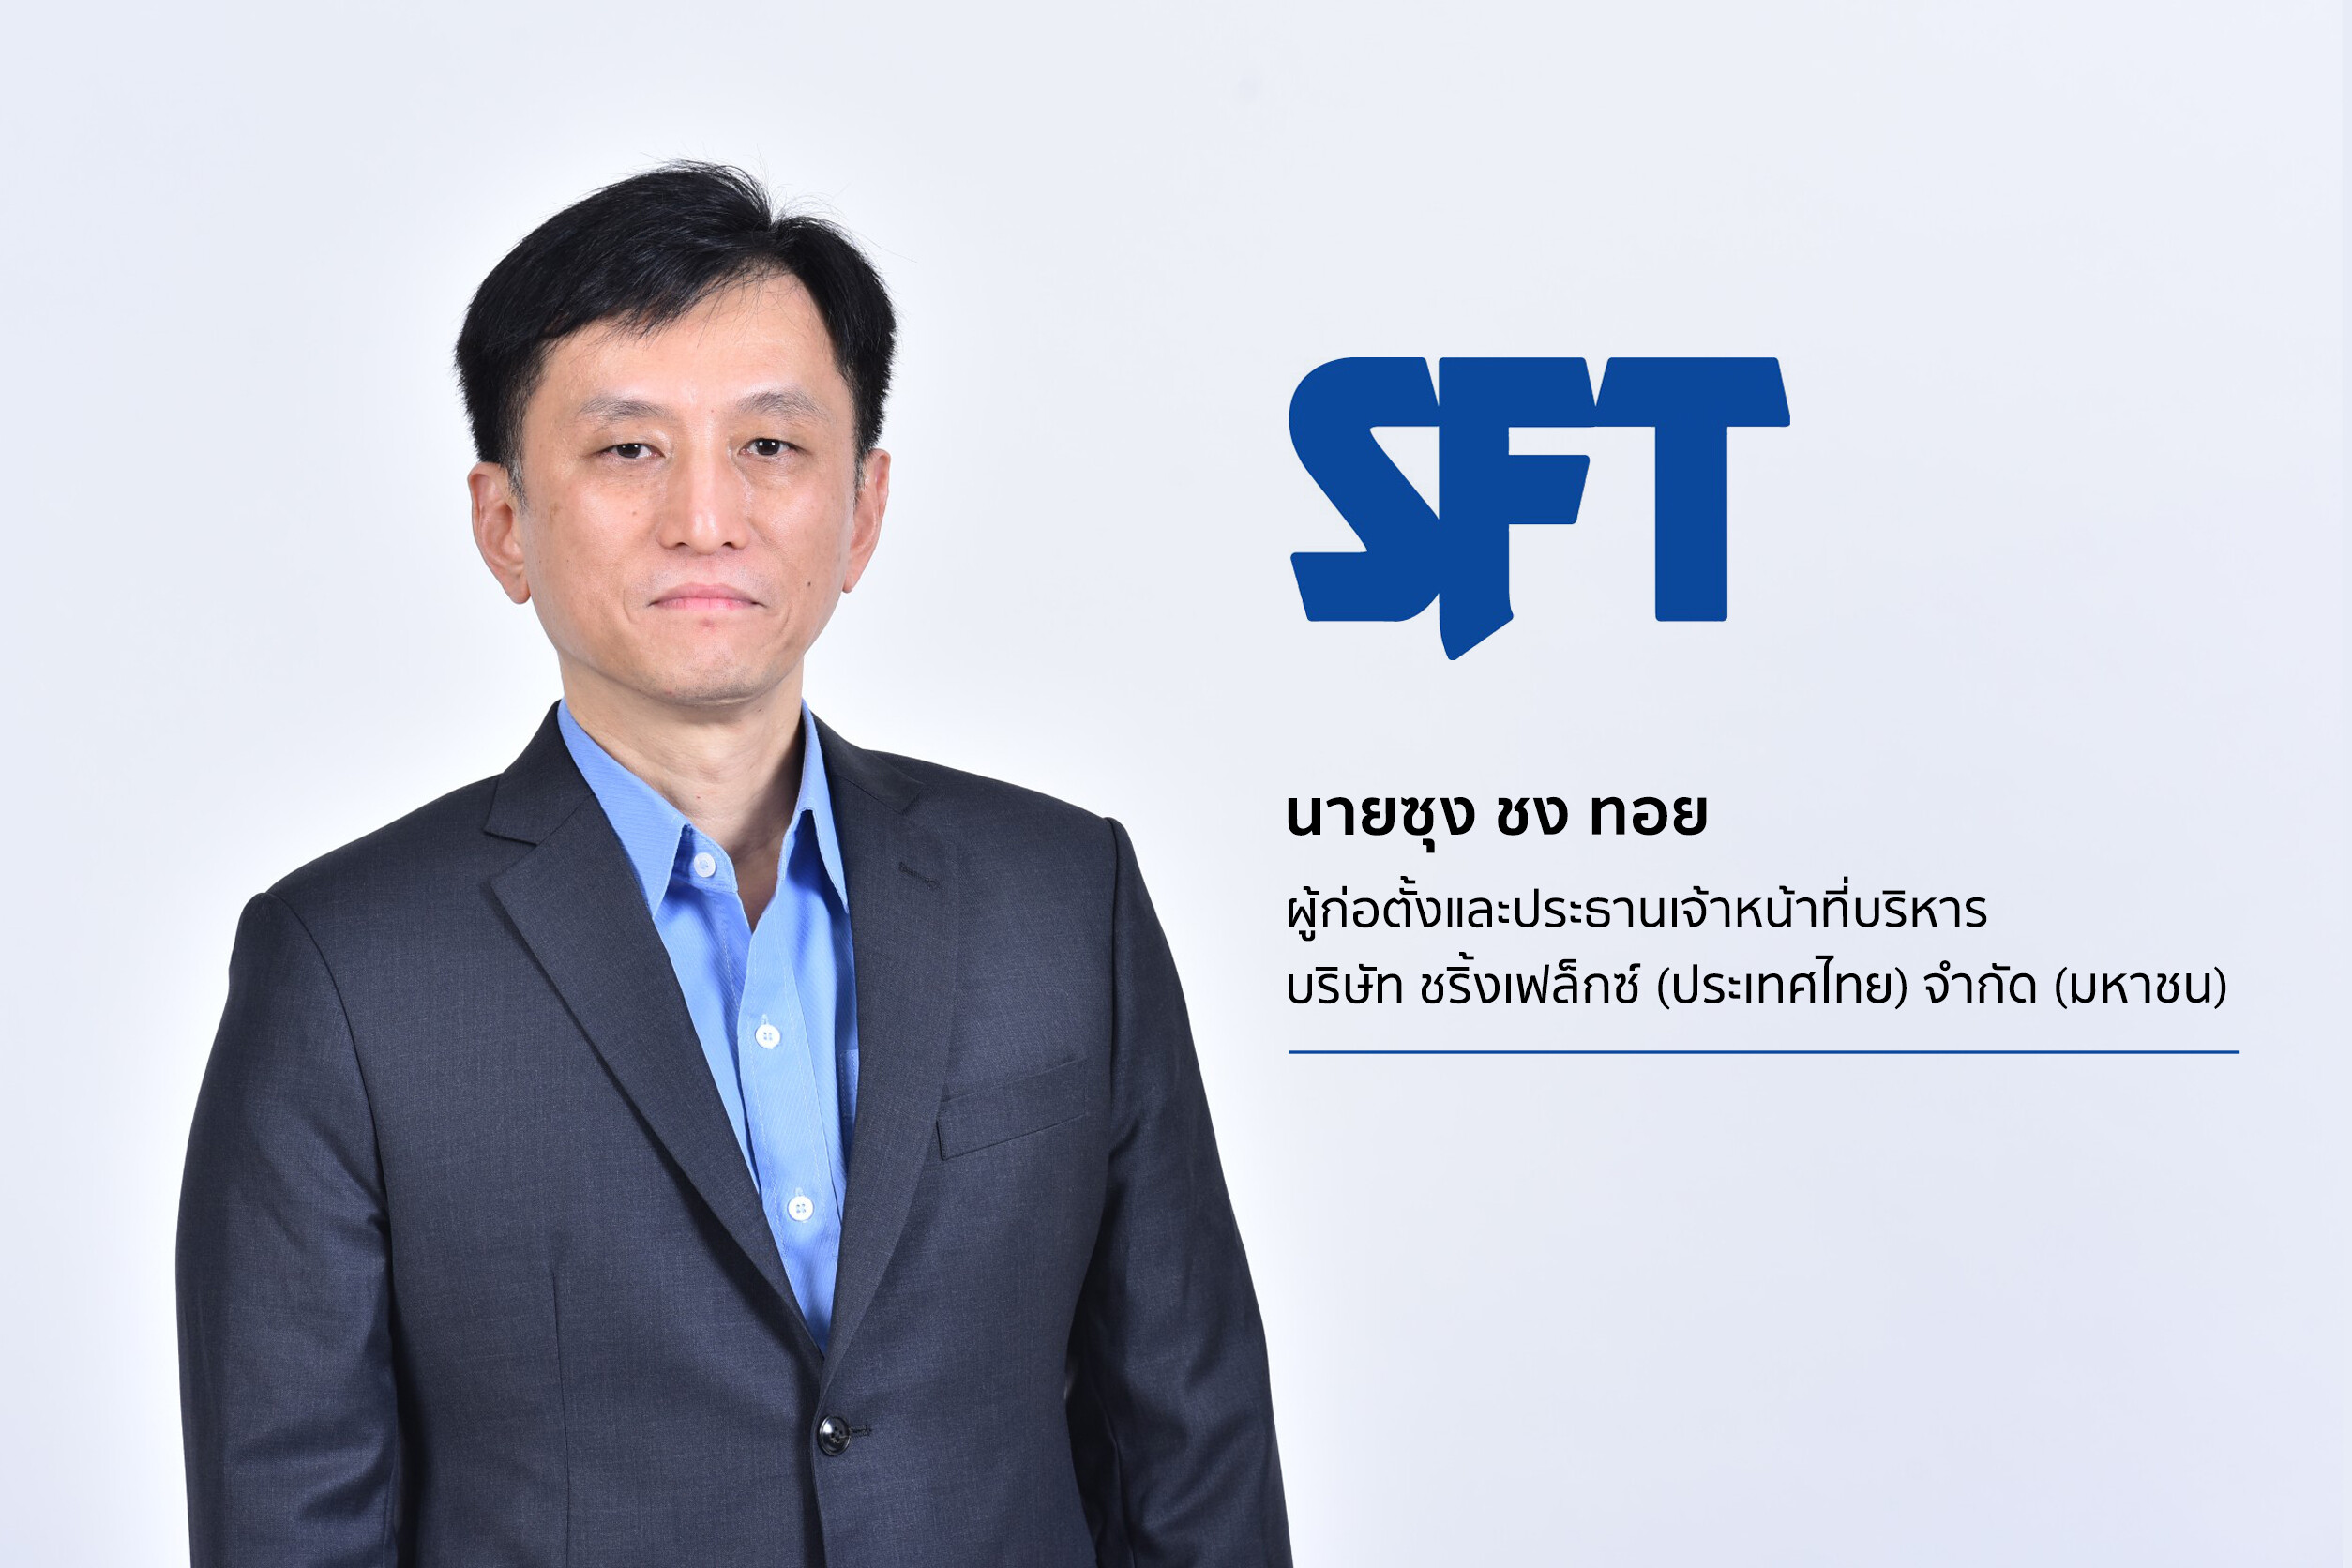 SFT พร้อมสนับสนุนแบรนด์ไทยใช้ฉลากฟิล์มหดรัดรูปที่เป็นมิตรต่อสิ่งแวดล้อม  หลังภาครัฐเร่งดันโมเดลเศรษฐกิจ BCG รับมือกฎเกณฑ์การค้าโลก